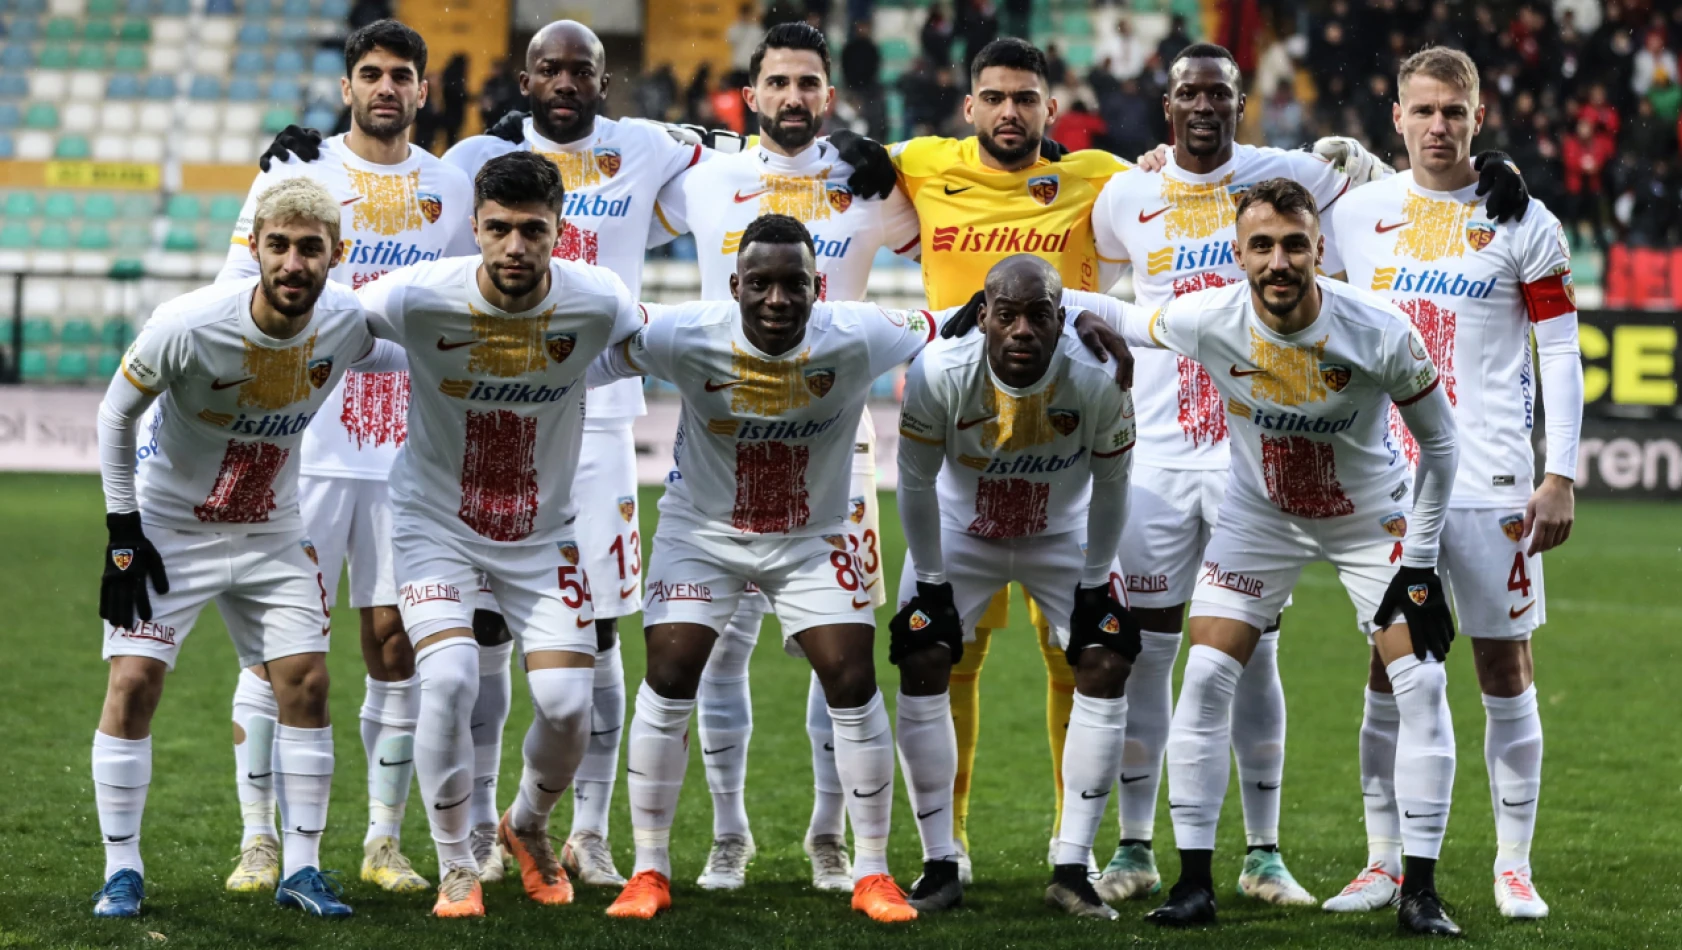 Kayserispor İstanbul'da kayıplarda! İlk yarıda 4 gol var... Karagümrük - Kayserispor